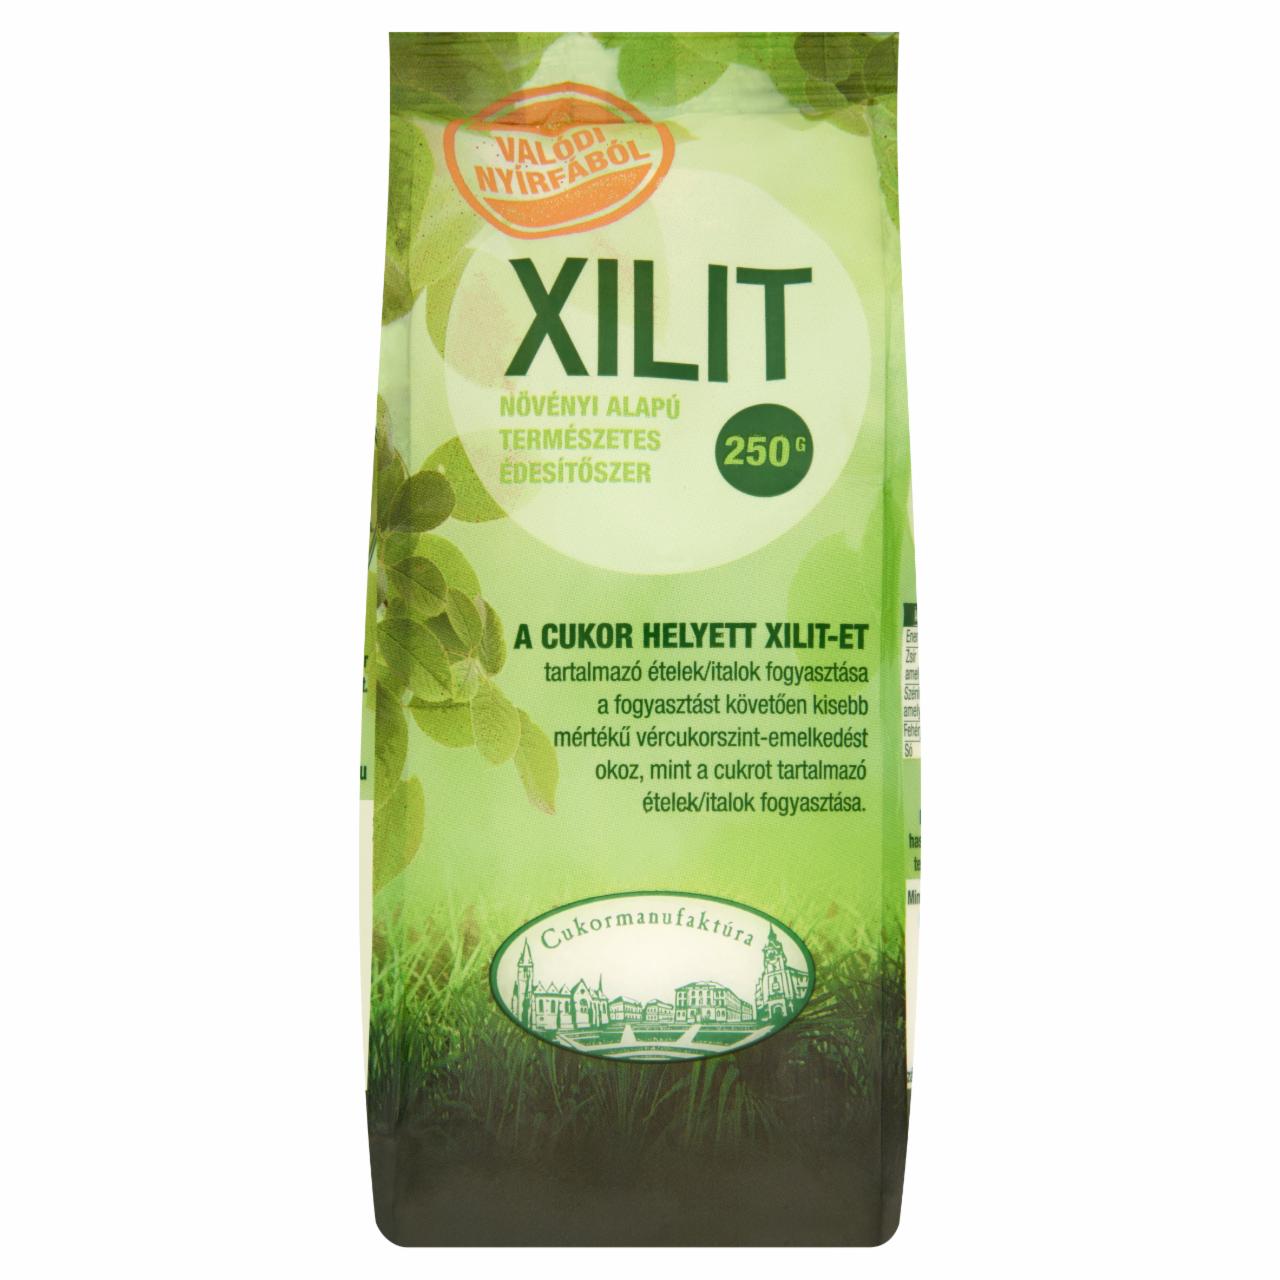 Képek - Xilit növényi alapú természetes édesítőszer 250 g